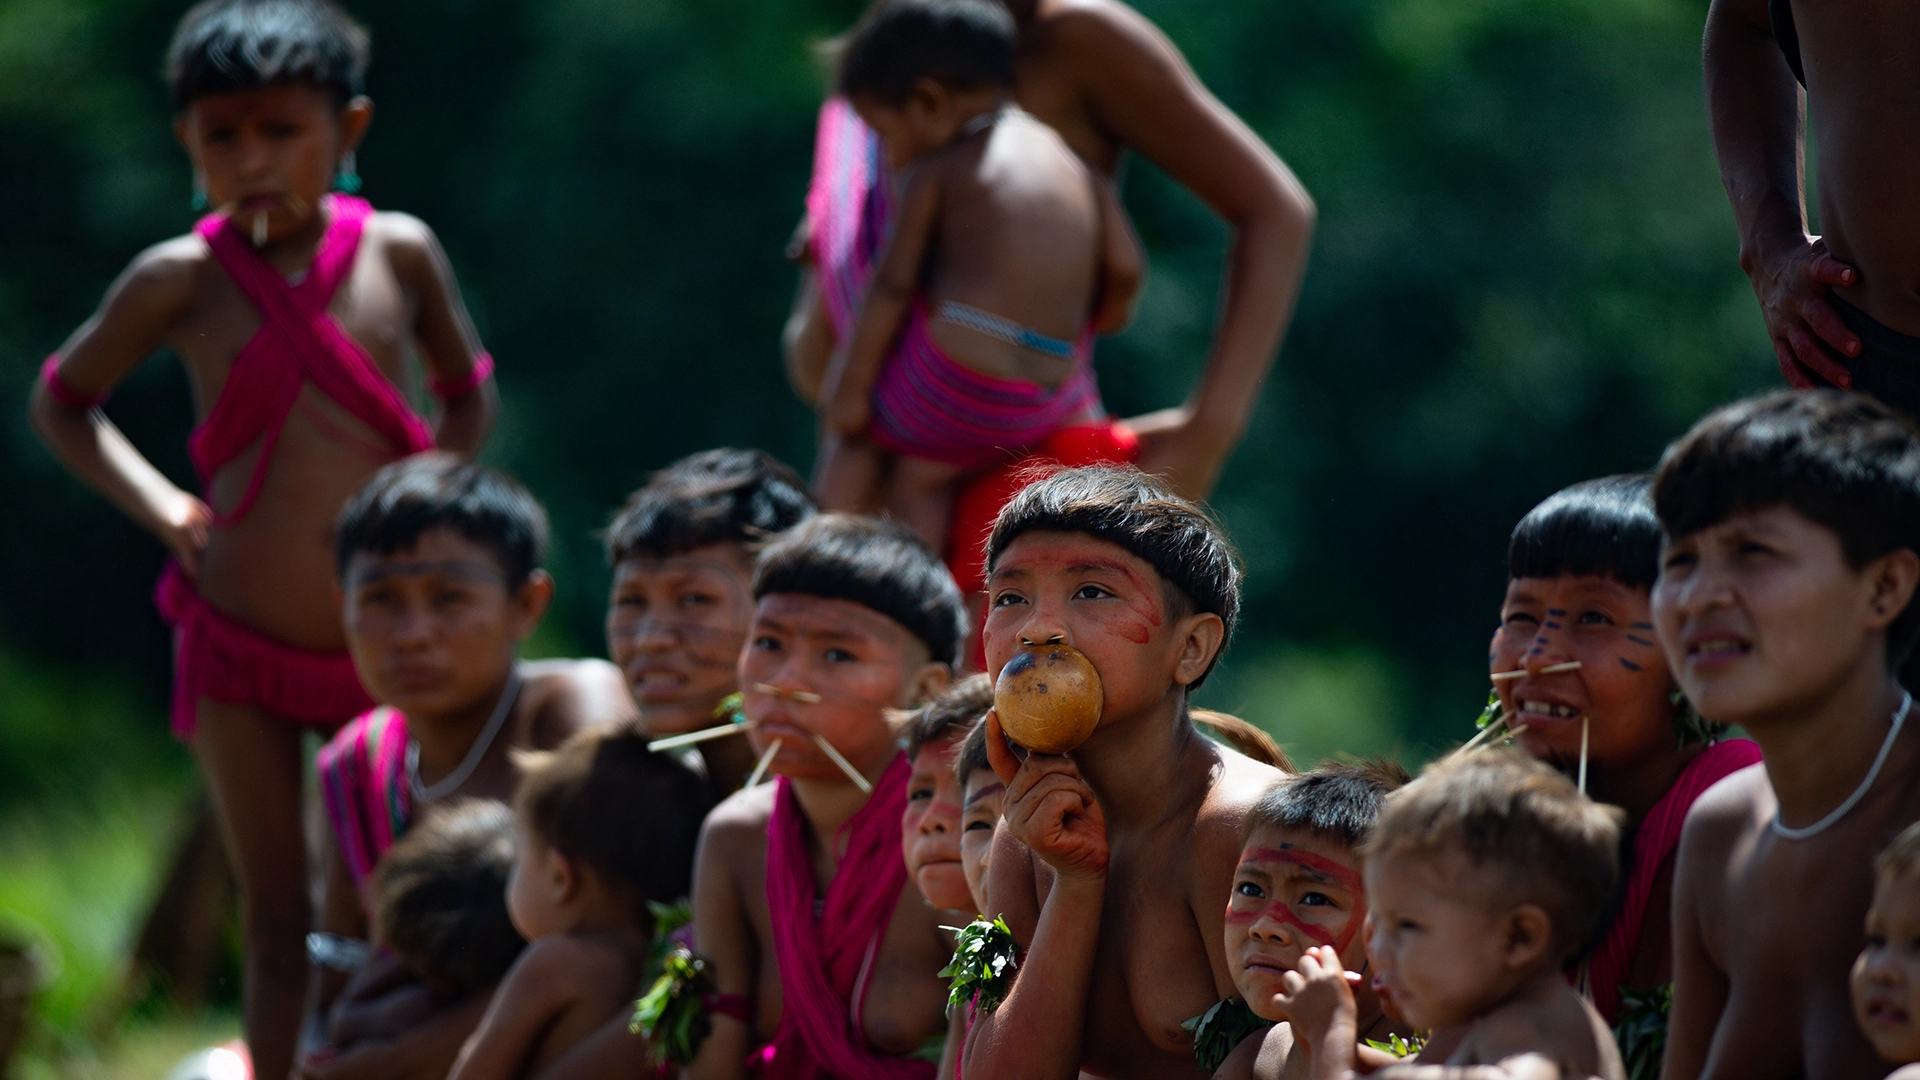 Yanomami children